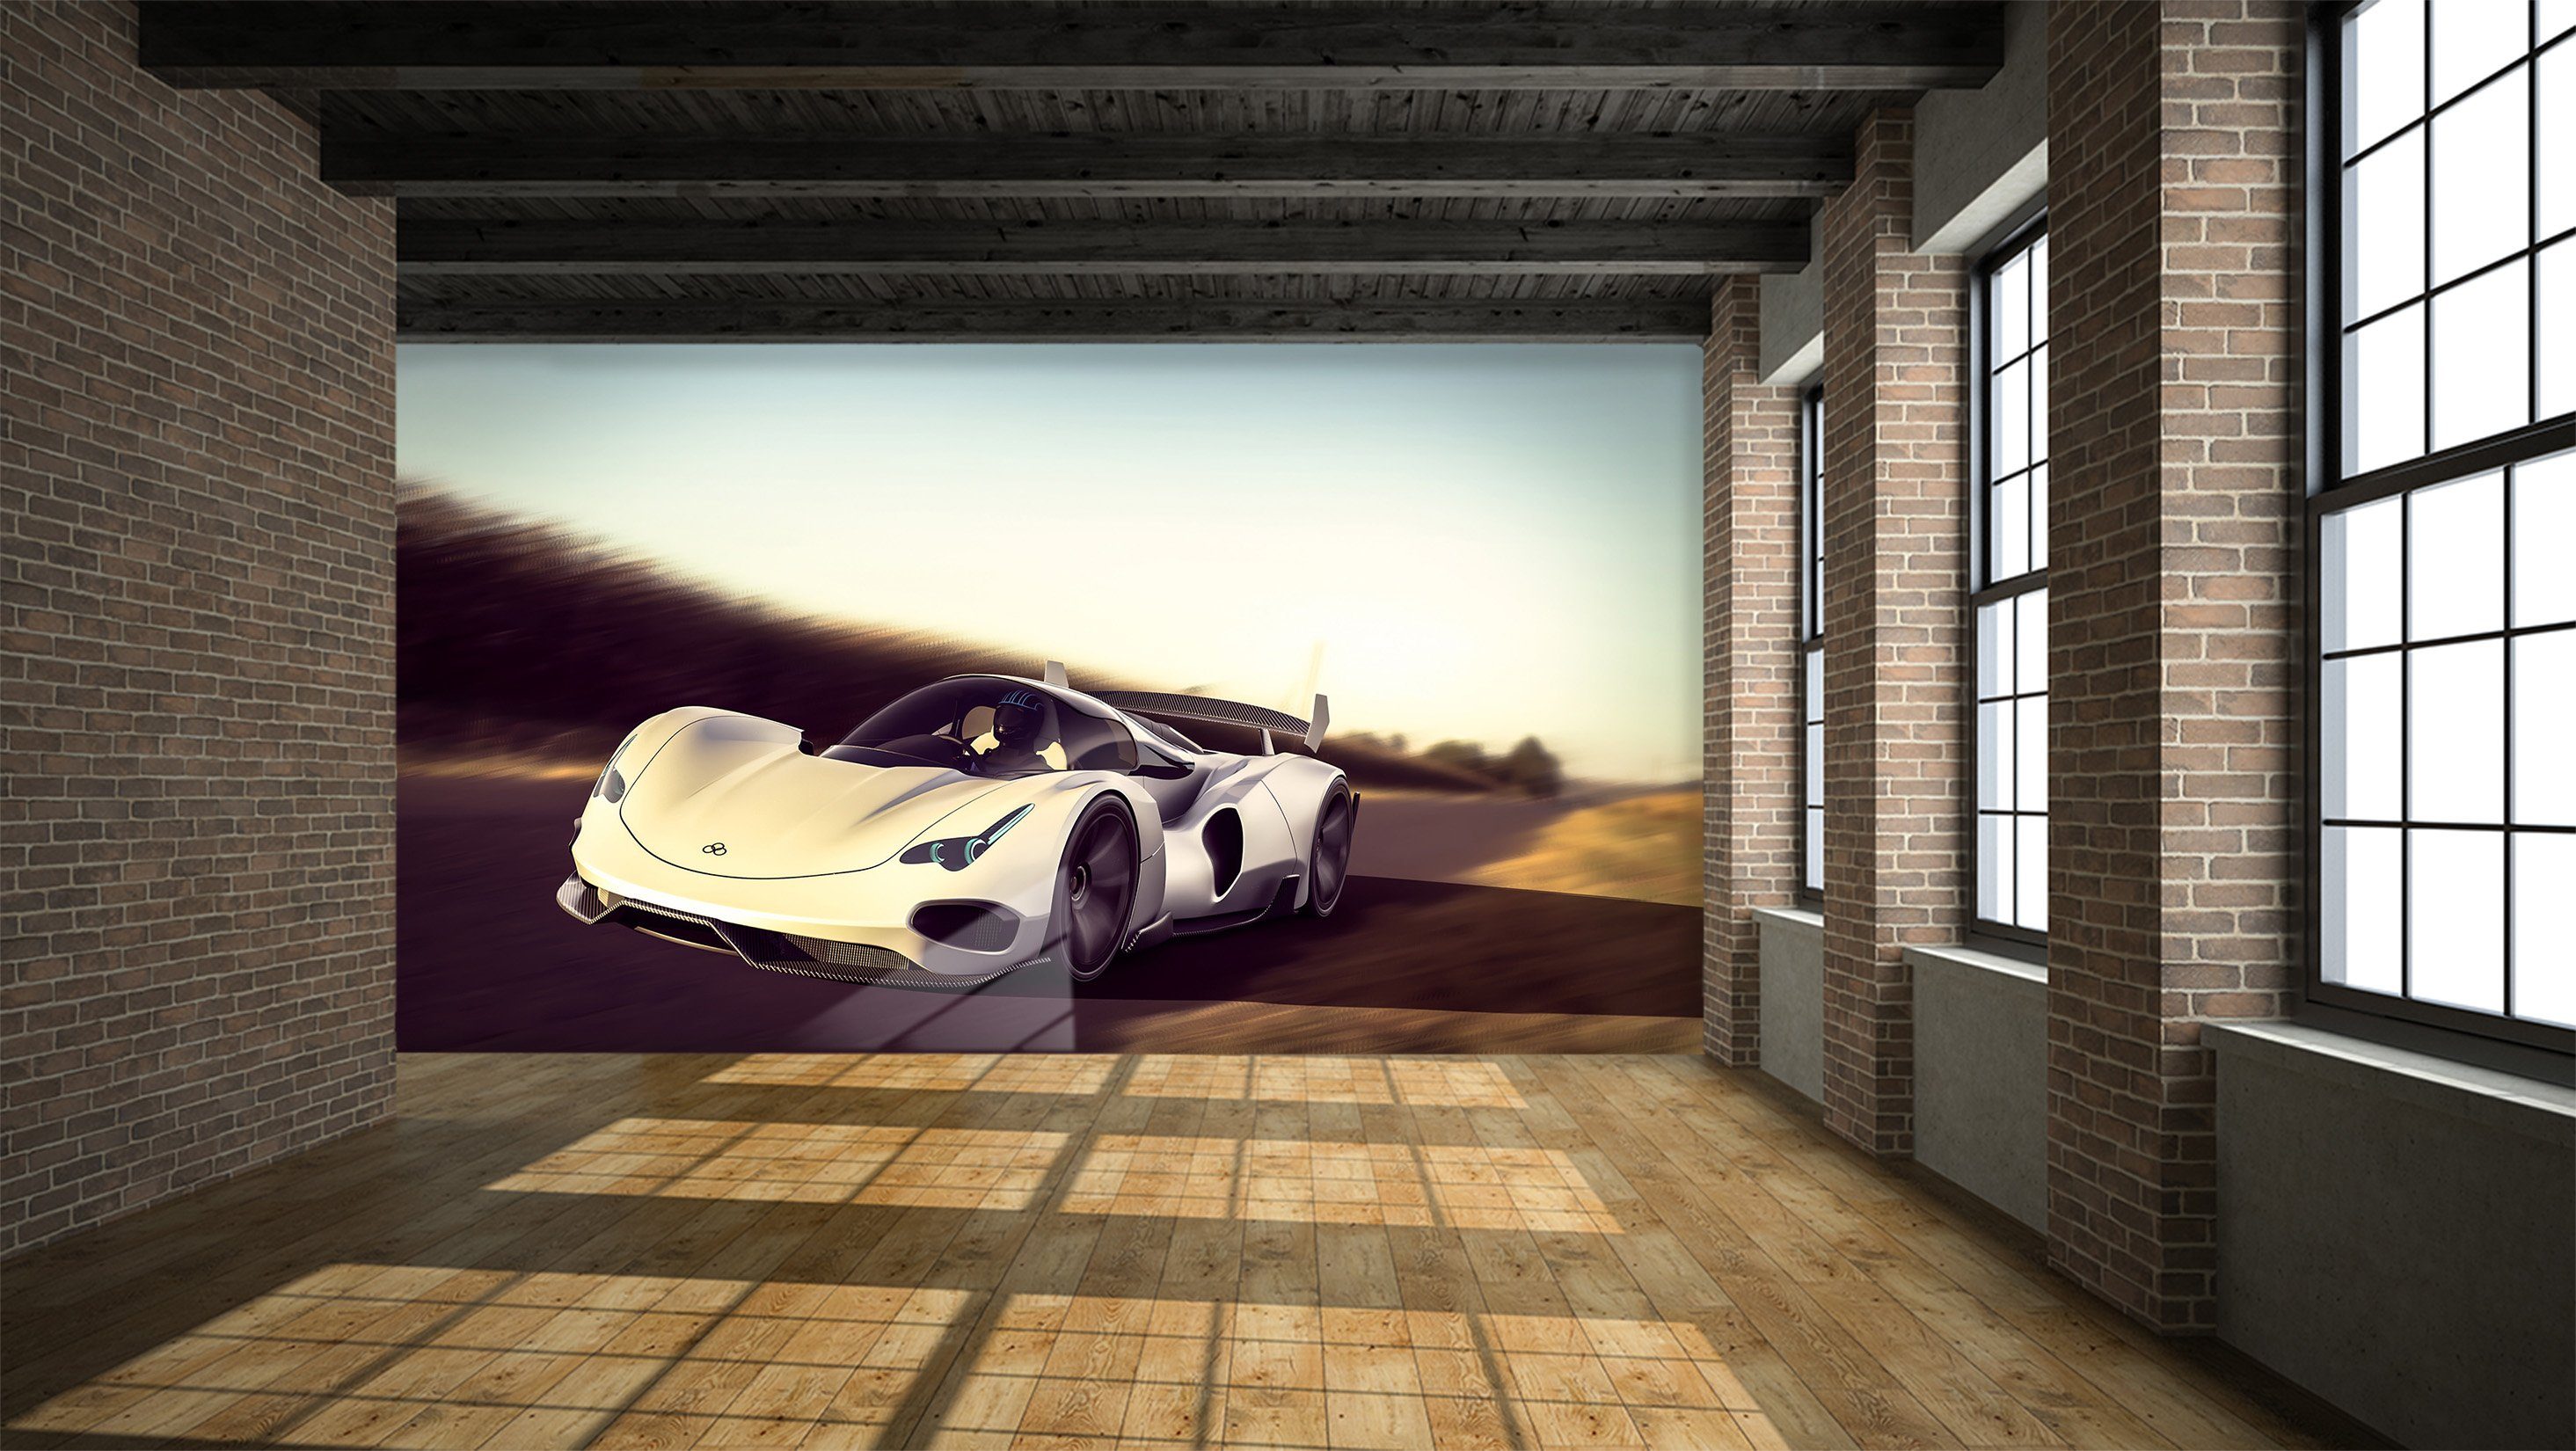 3D Supercar Road 970 Vehicle Wall Murals Wallpaper AJ Wallpaper 2 